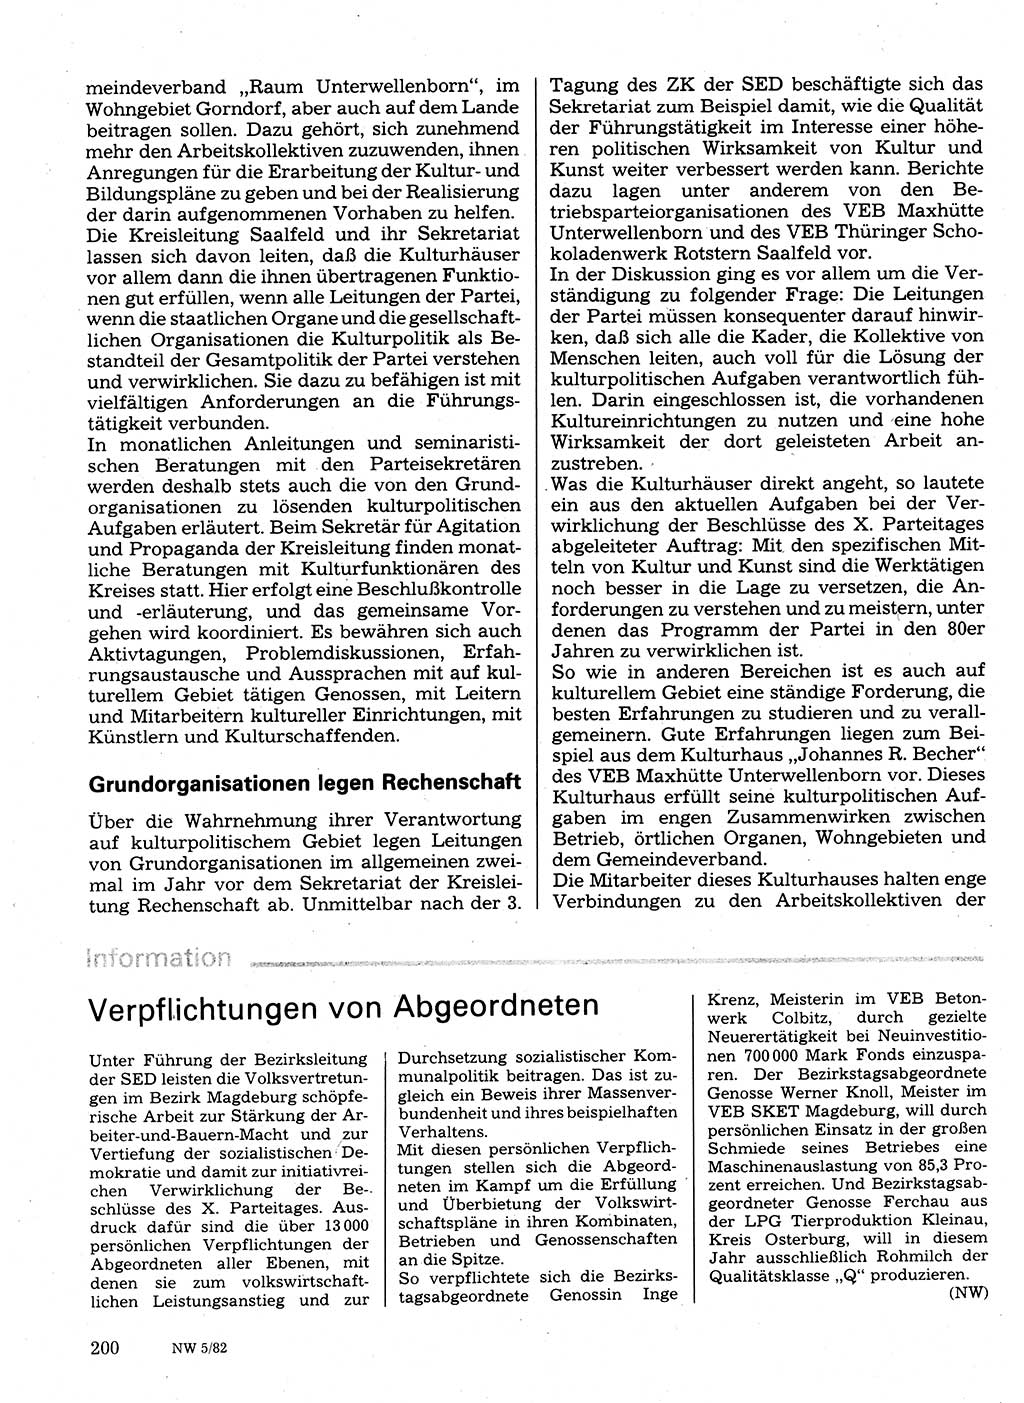 Neuer Weg (NW), Organ des Zentralkomitees (ZK) der SED (Sozialistische Einheitspartei Deutschlands) für Fragen des Parteilebens, 37. Jahrgang [Deutsche Demokratische Republik (DDR)] 1982, Seite 200 (NW ZK SED DDR 1982, S. 200)